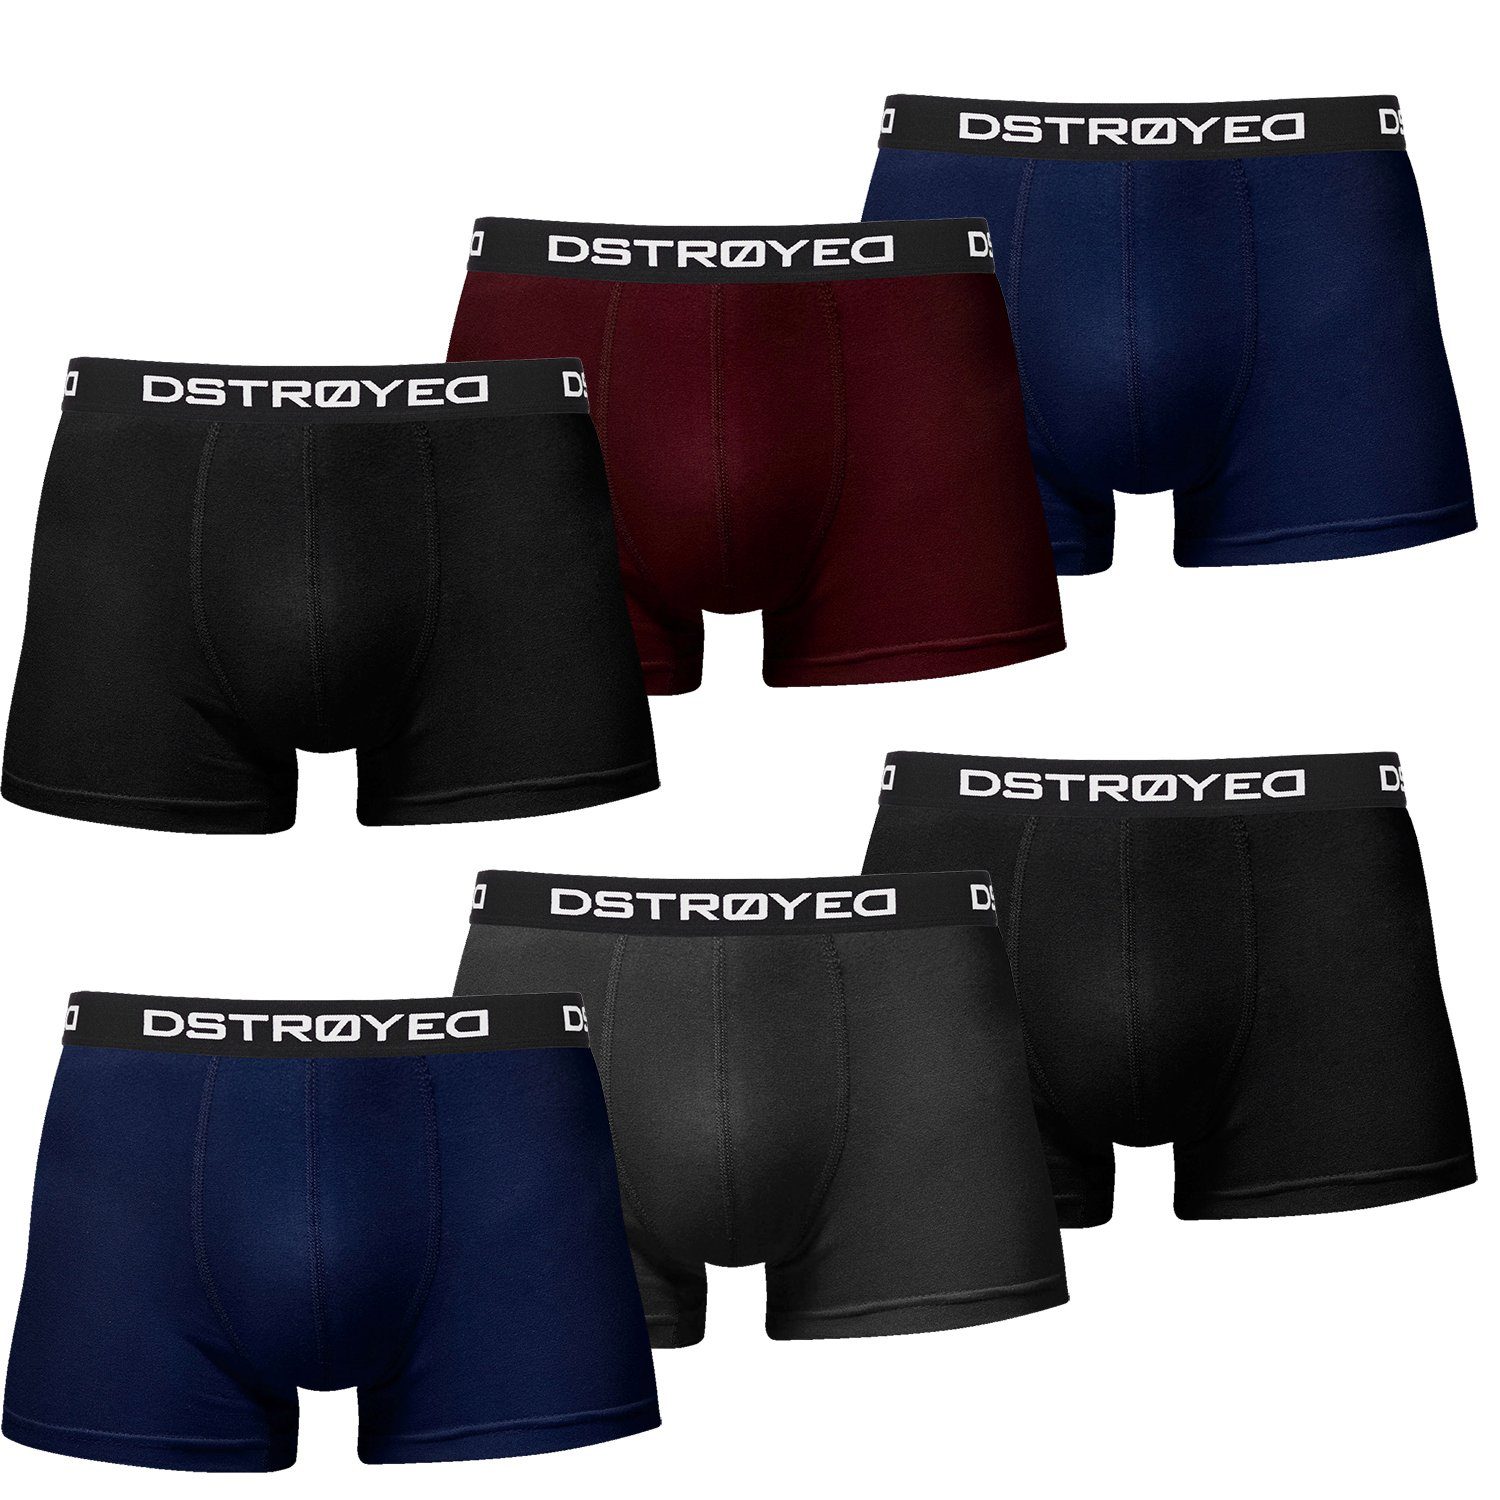 DSTROYED Boxershorts Baumwolle Herren - 606b-mehrfarbig Qualität Passform 7XL Premium (Sparpack, Pack) Männer perfekte 6er Unterhosen S